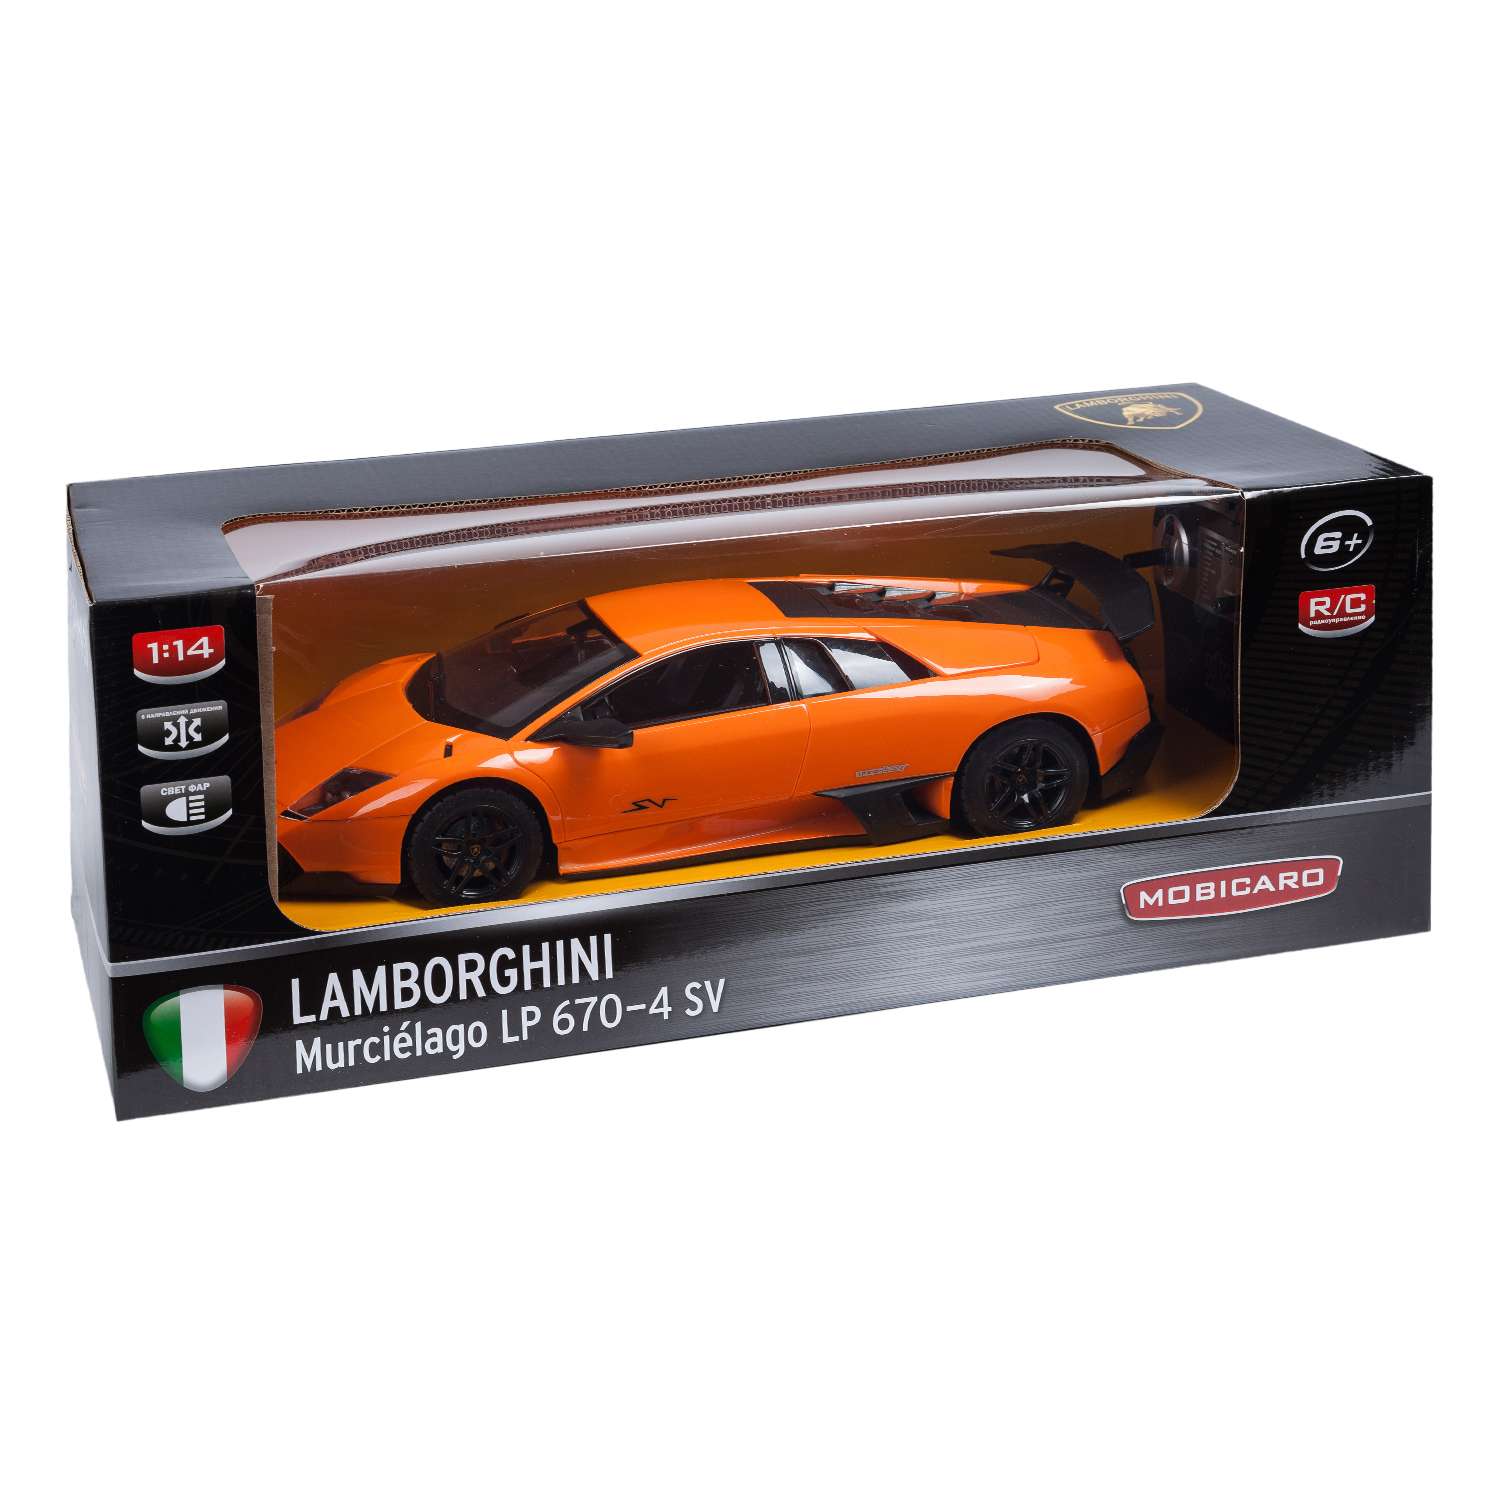 Машинка на радиоуправлении Mobicaro Lamborghini LP670 1:14 34 см Оранжевая - фото 2